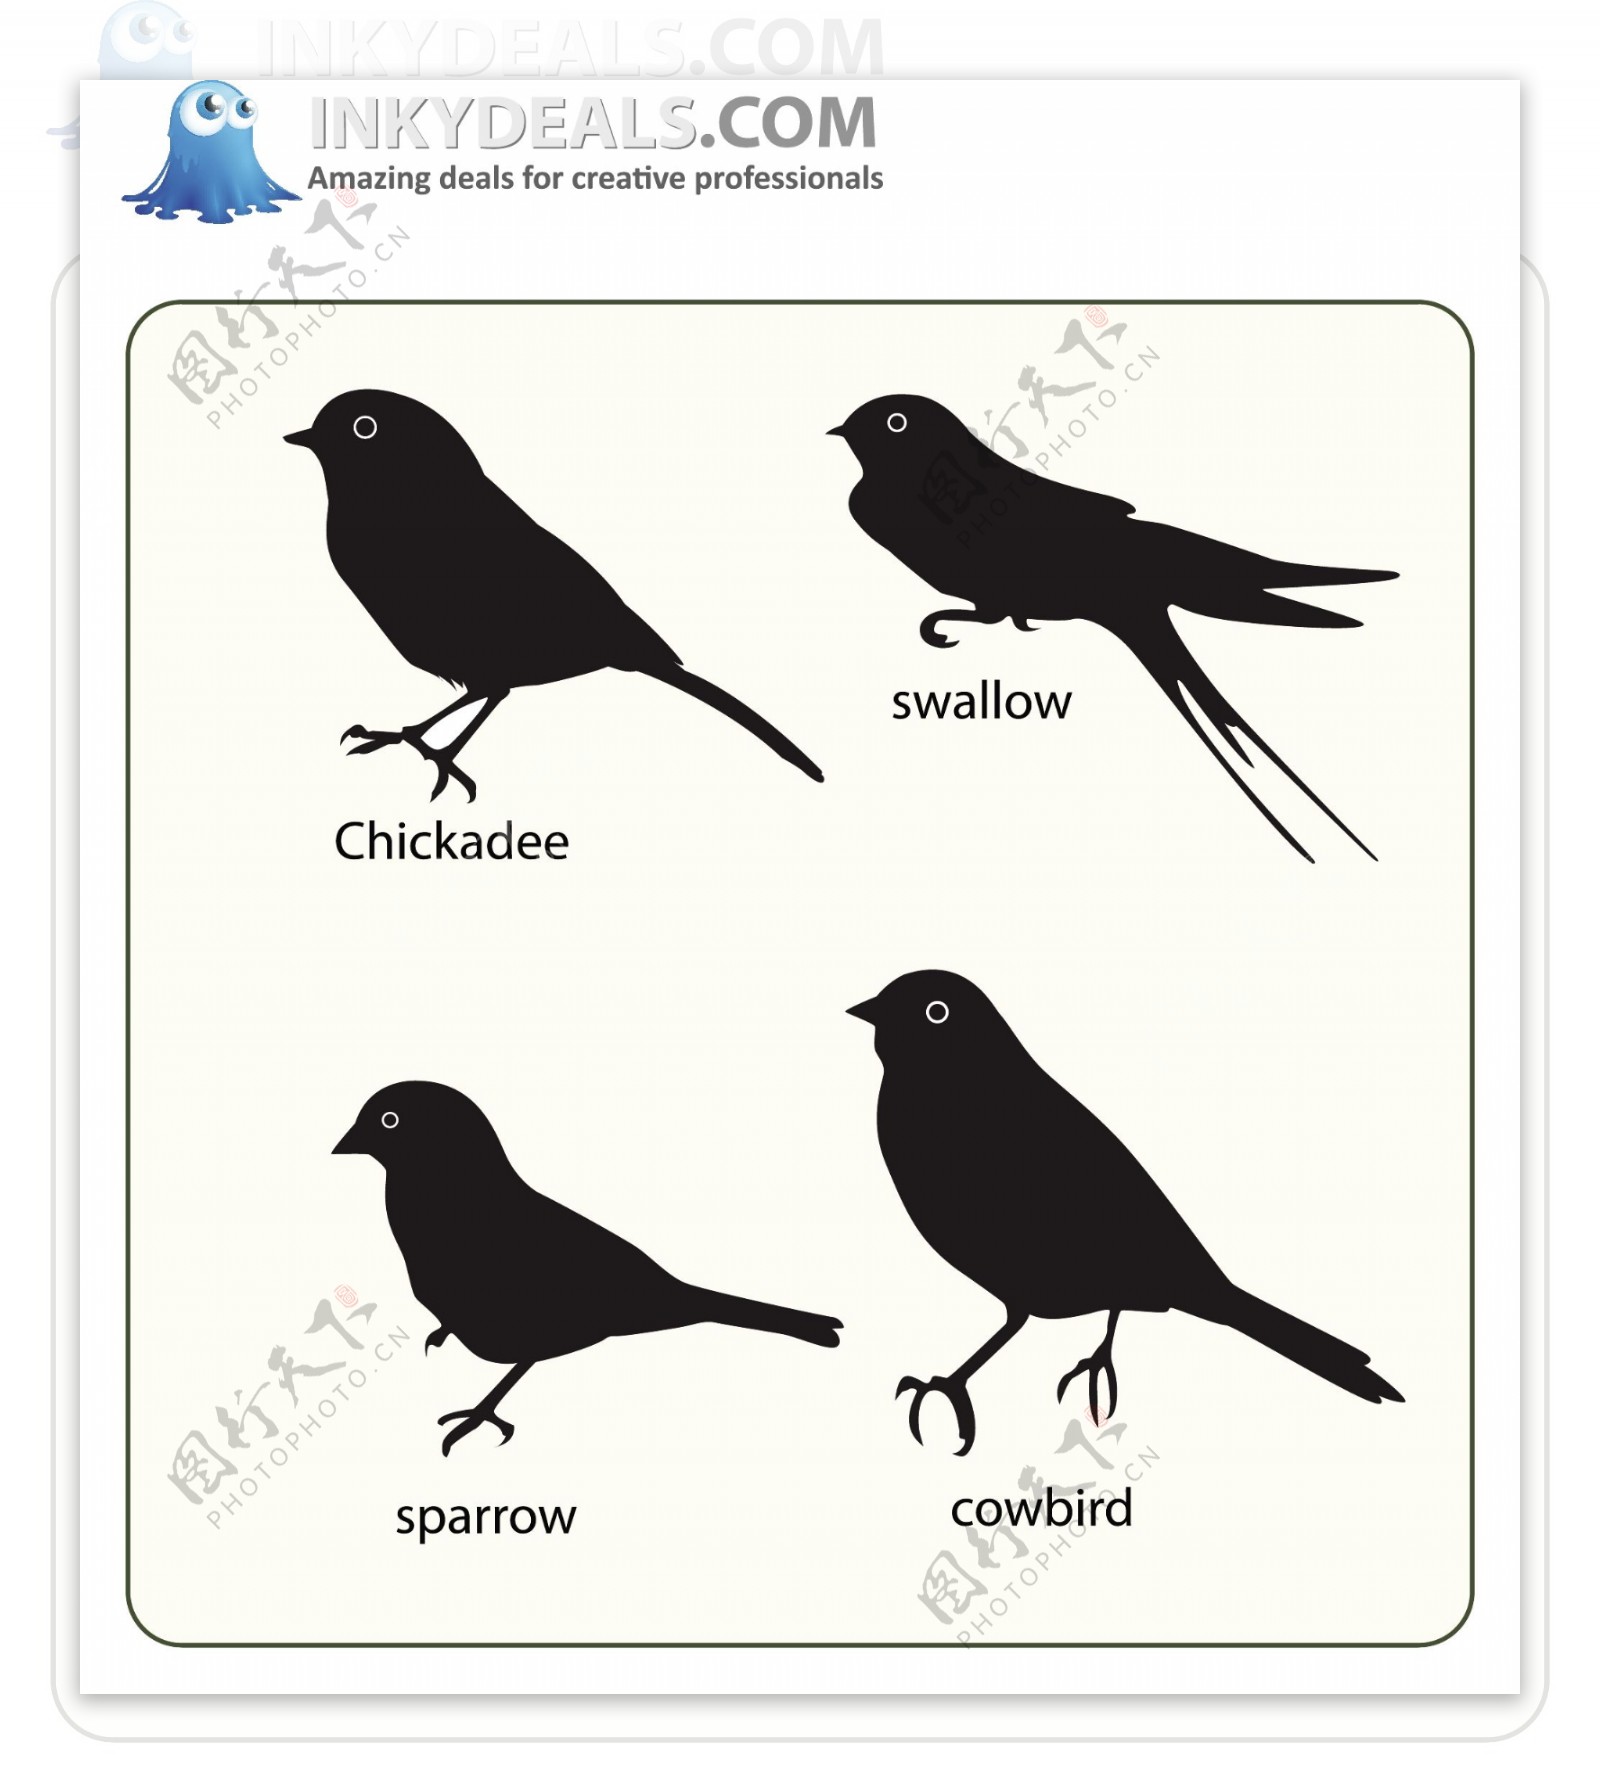 四支不同表情造形的鸟类设计元素图标矢量